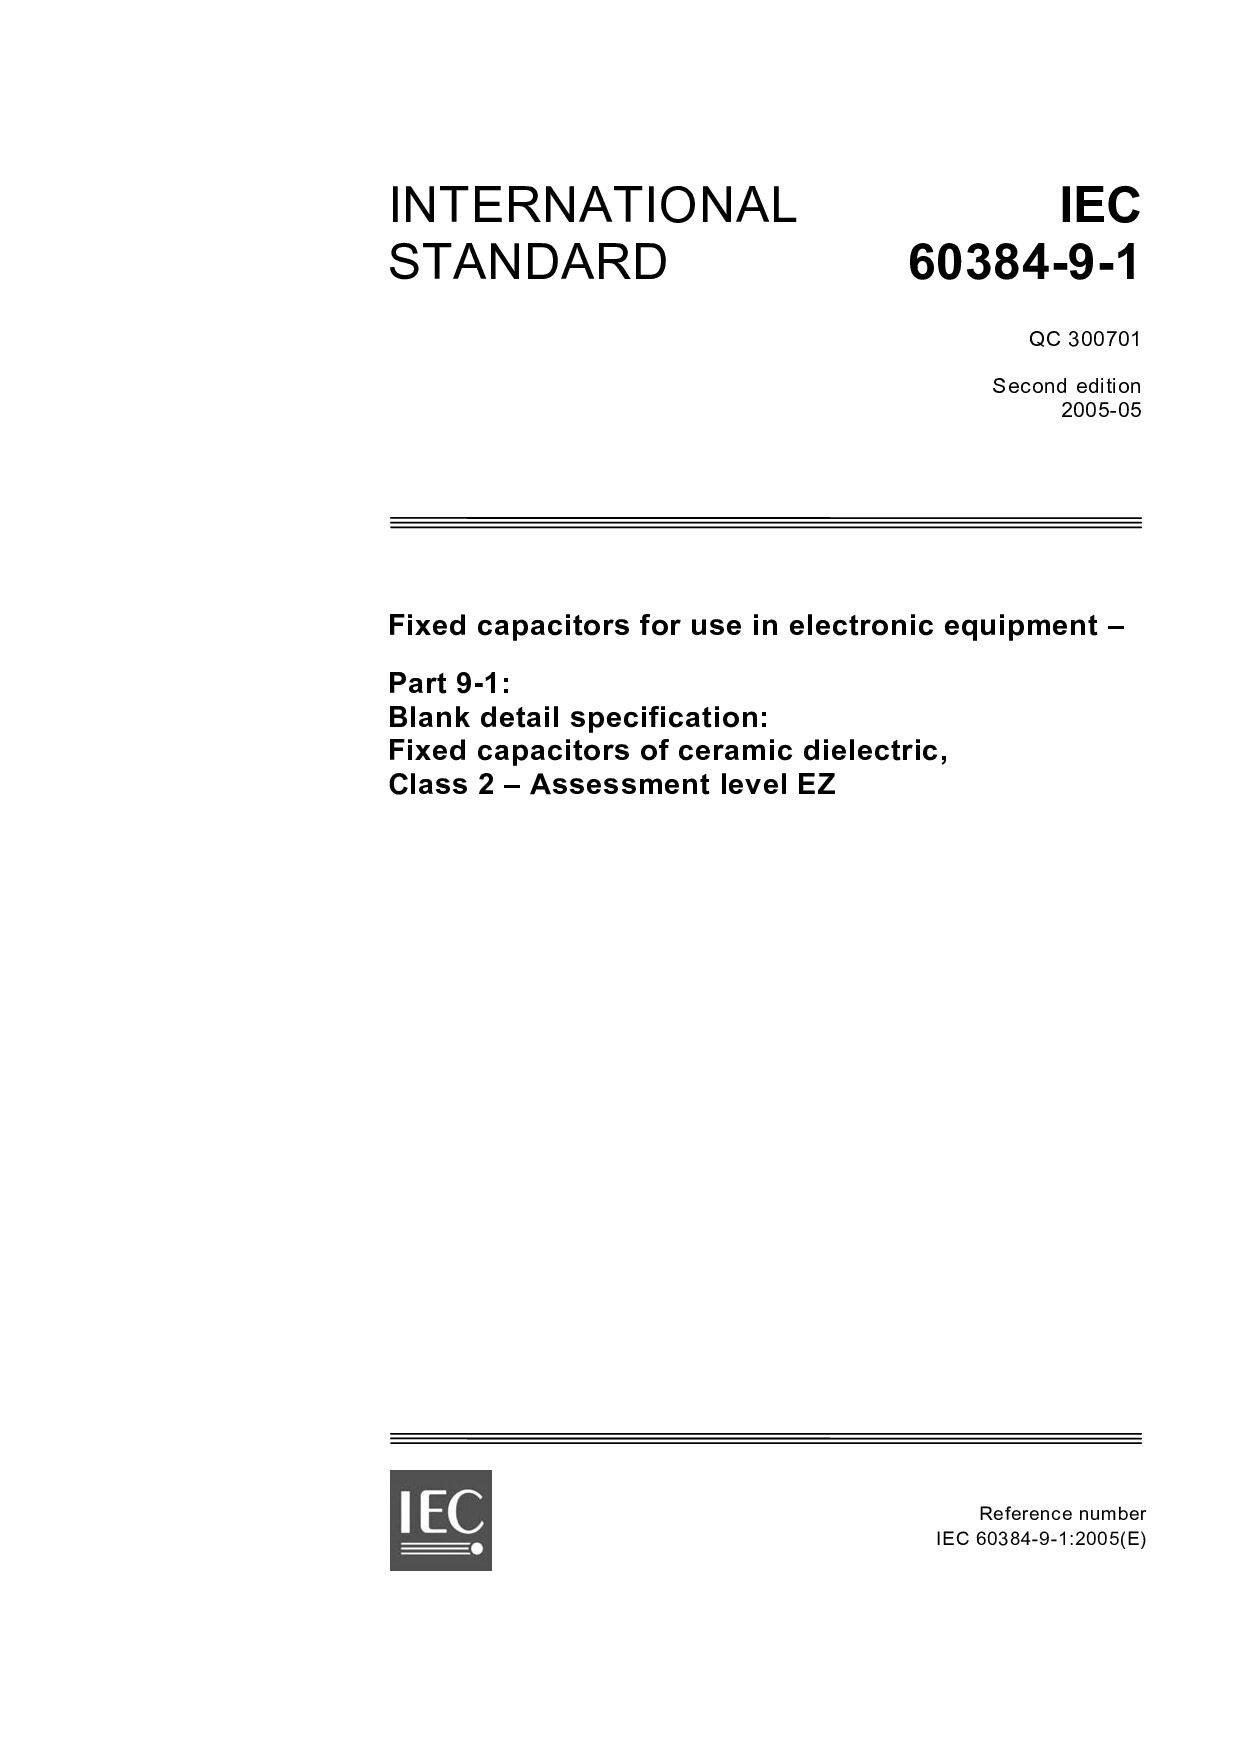 IEC 60384-9-1:2005